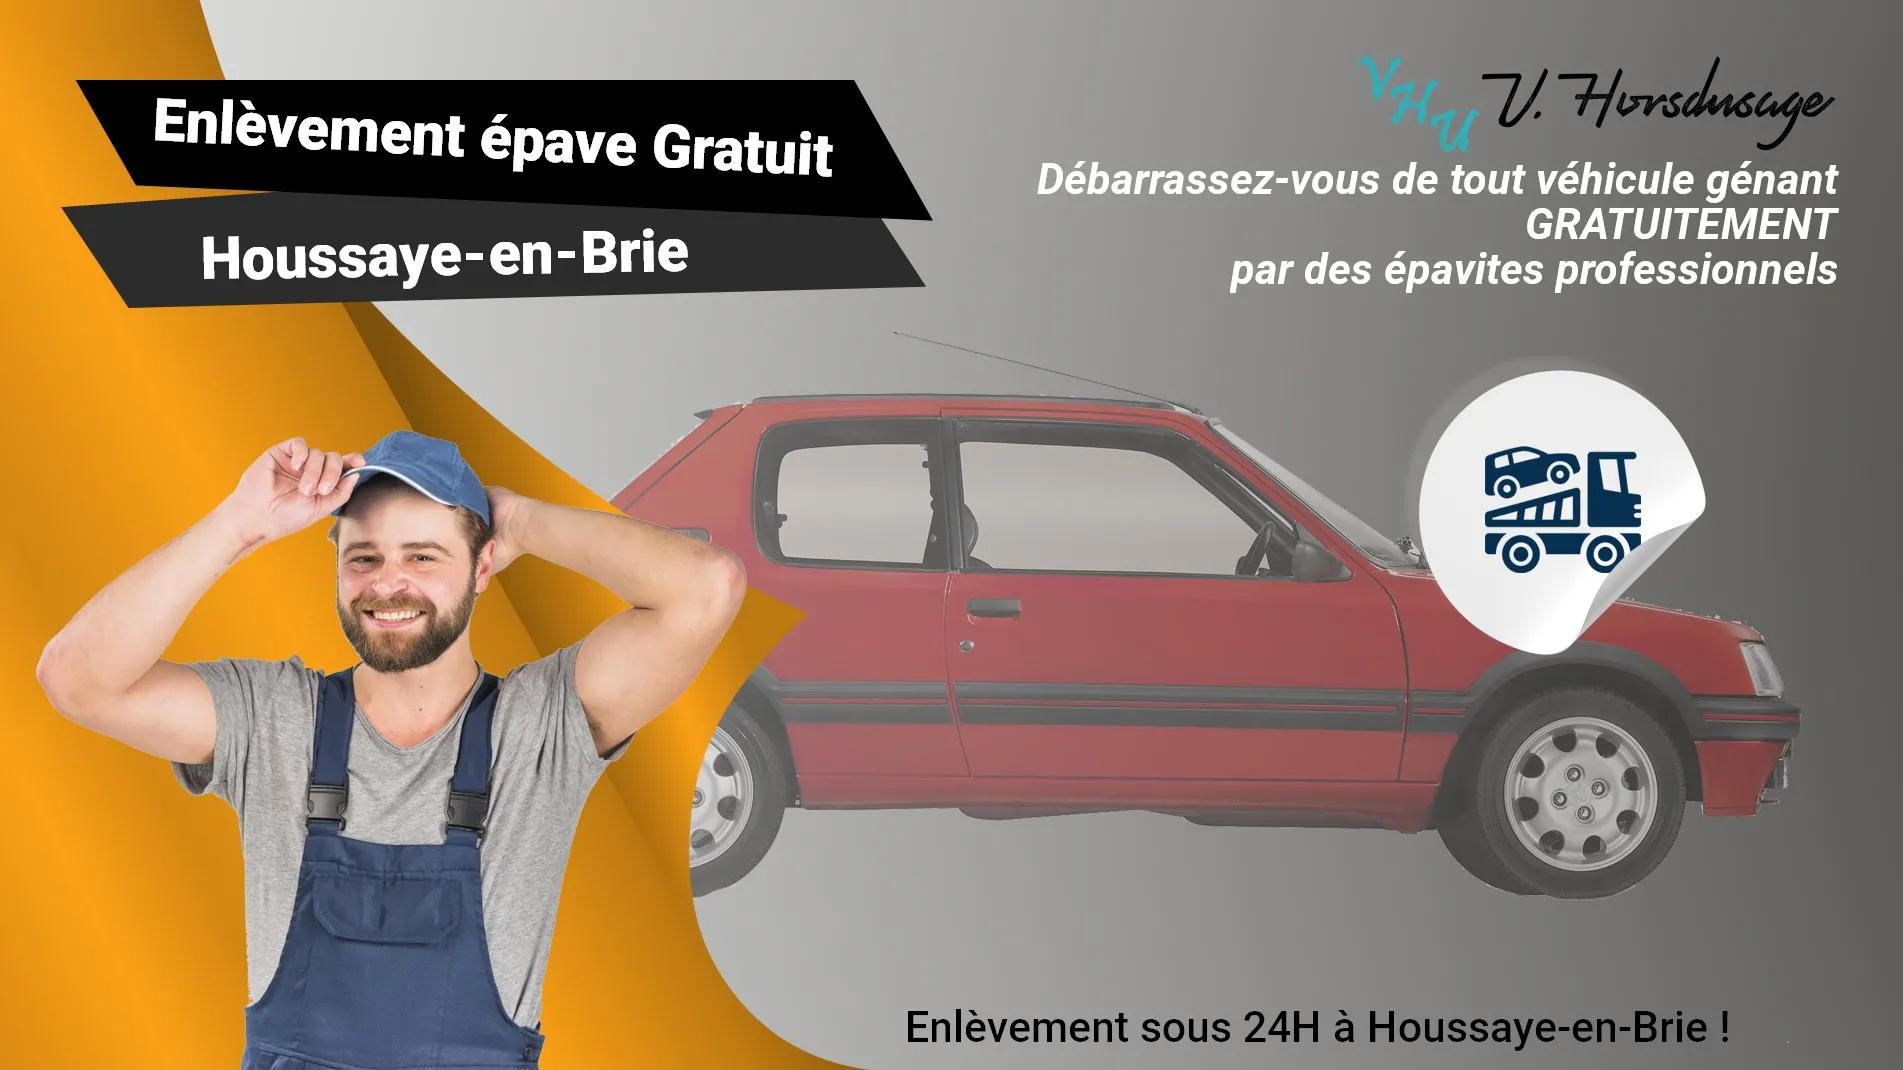 Pour un enlèvement gratuit à Houssaye-en-Brie, contactez nos épavistes agréé VHU